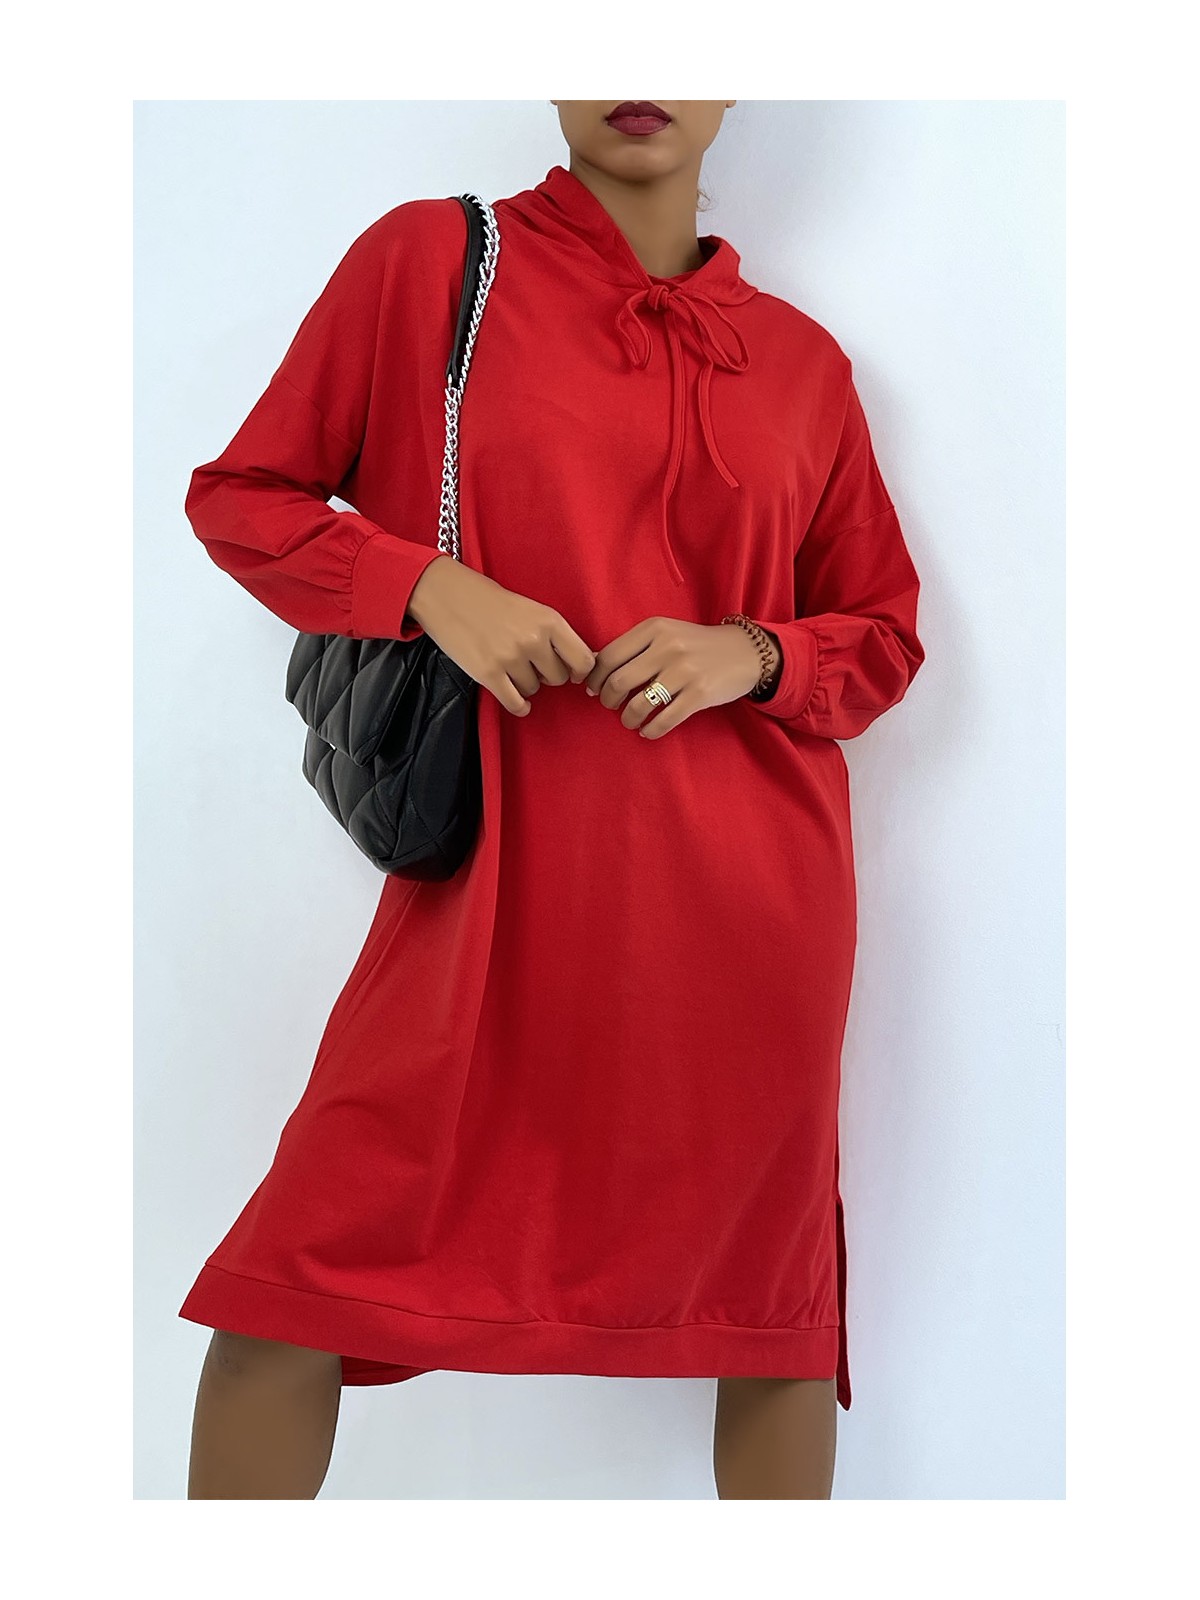 Longue robe sweat over size en rouge avec capuche - 4